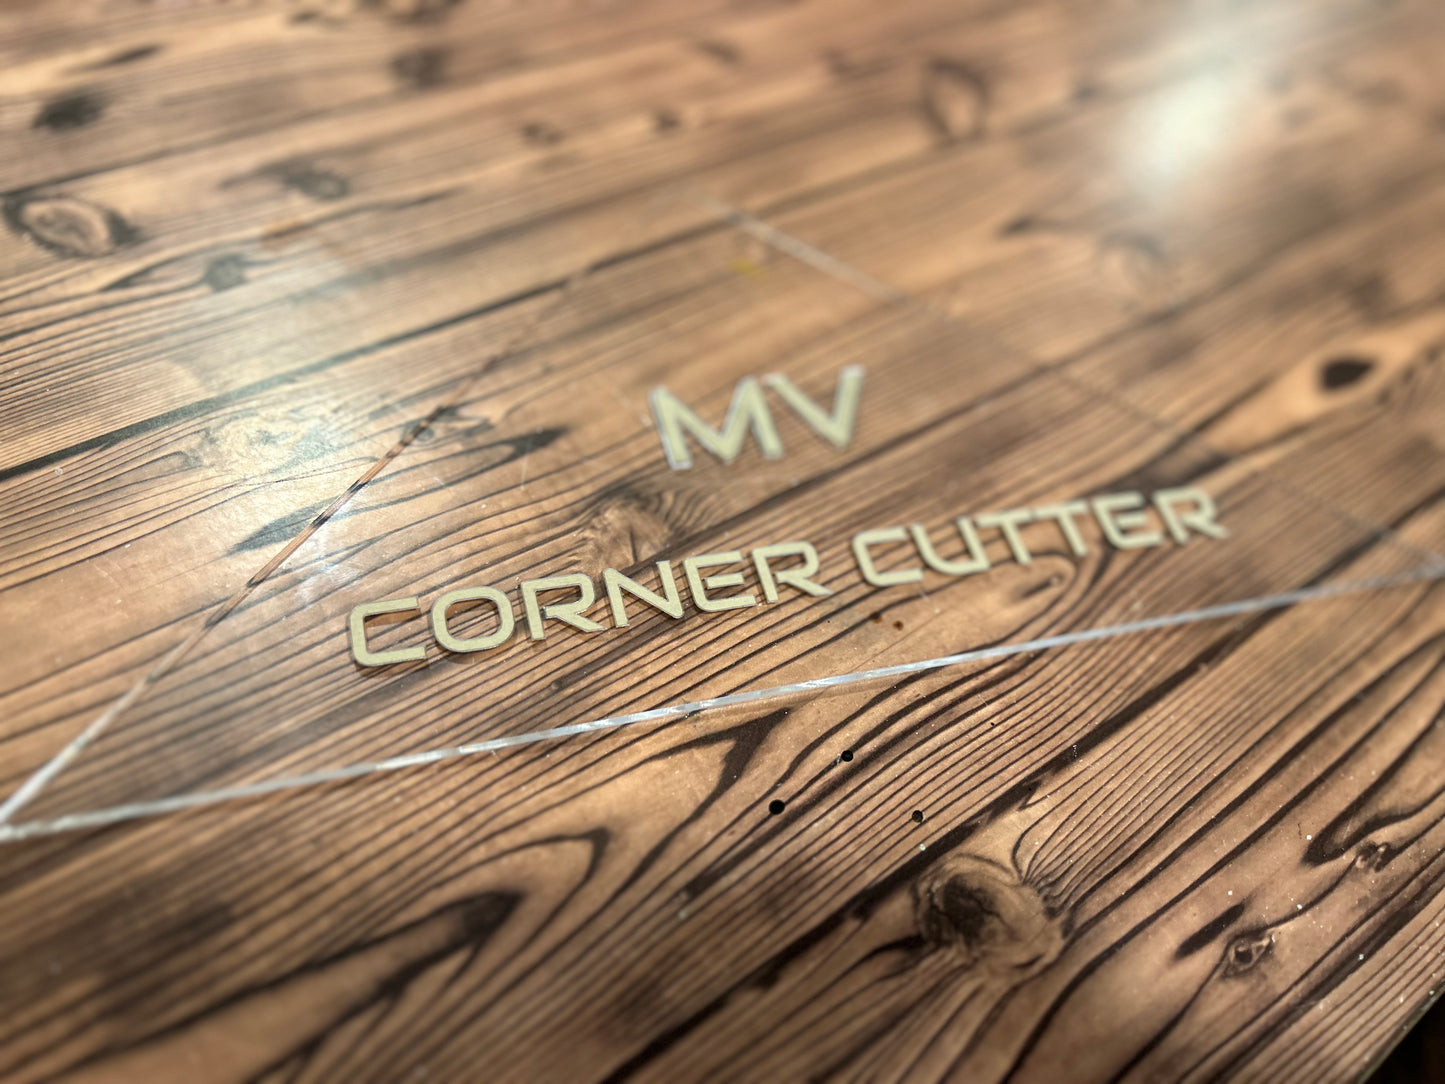 M V Corner Cutter